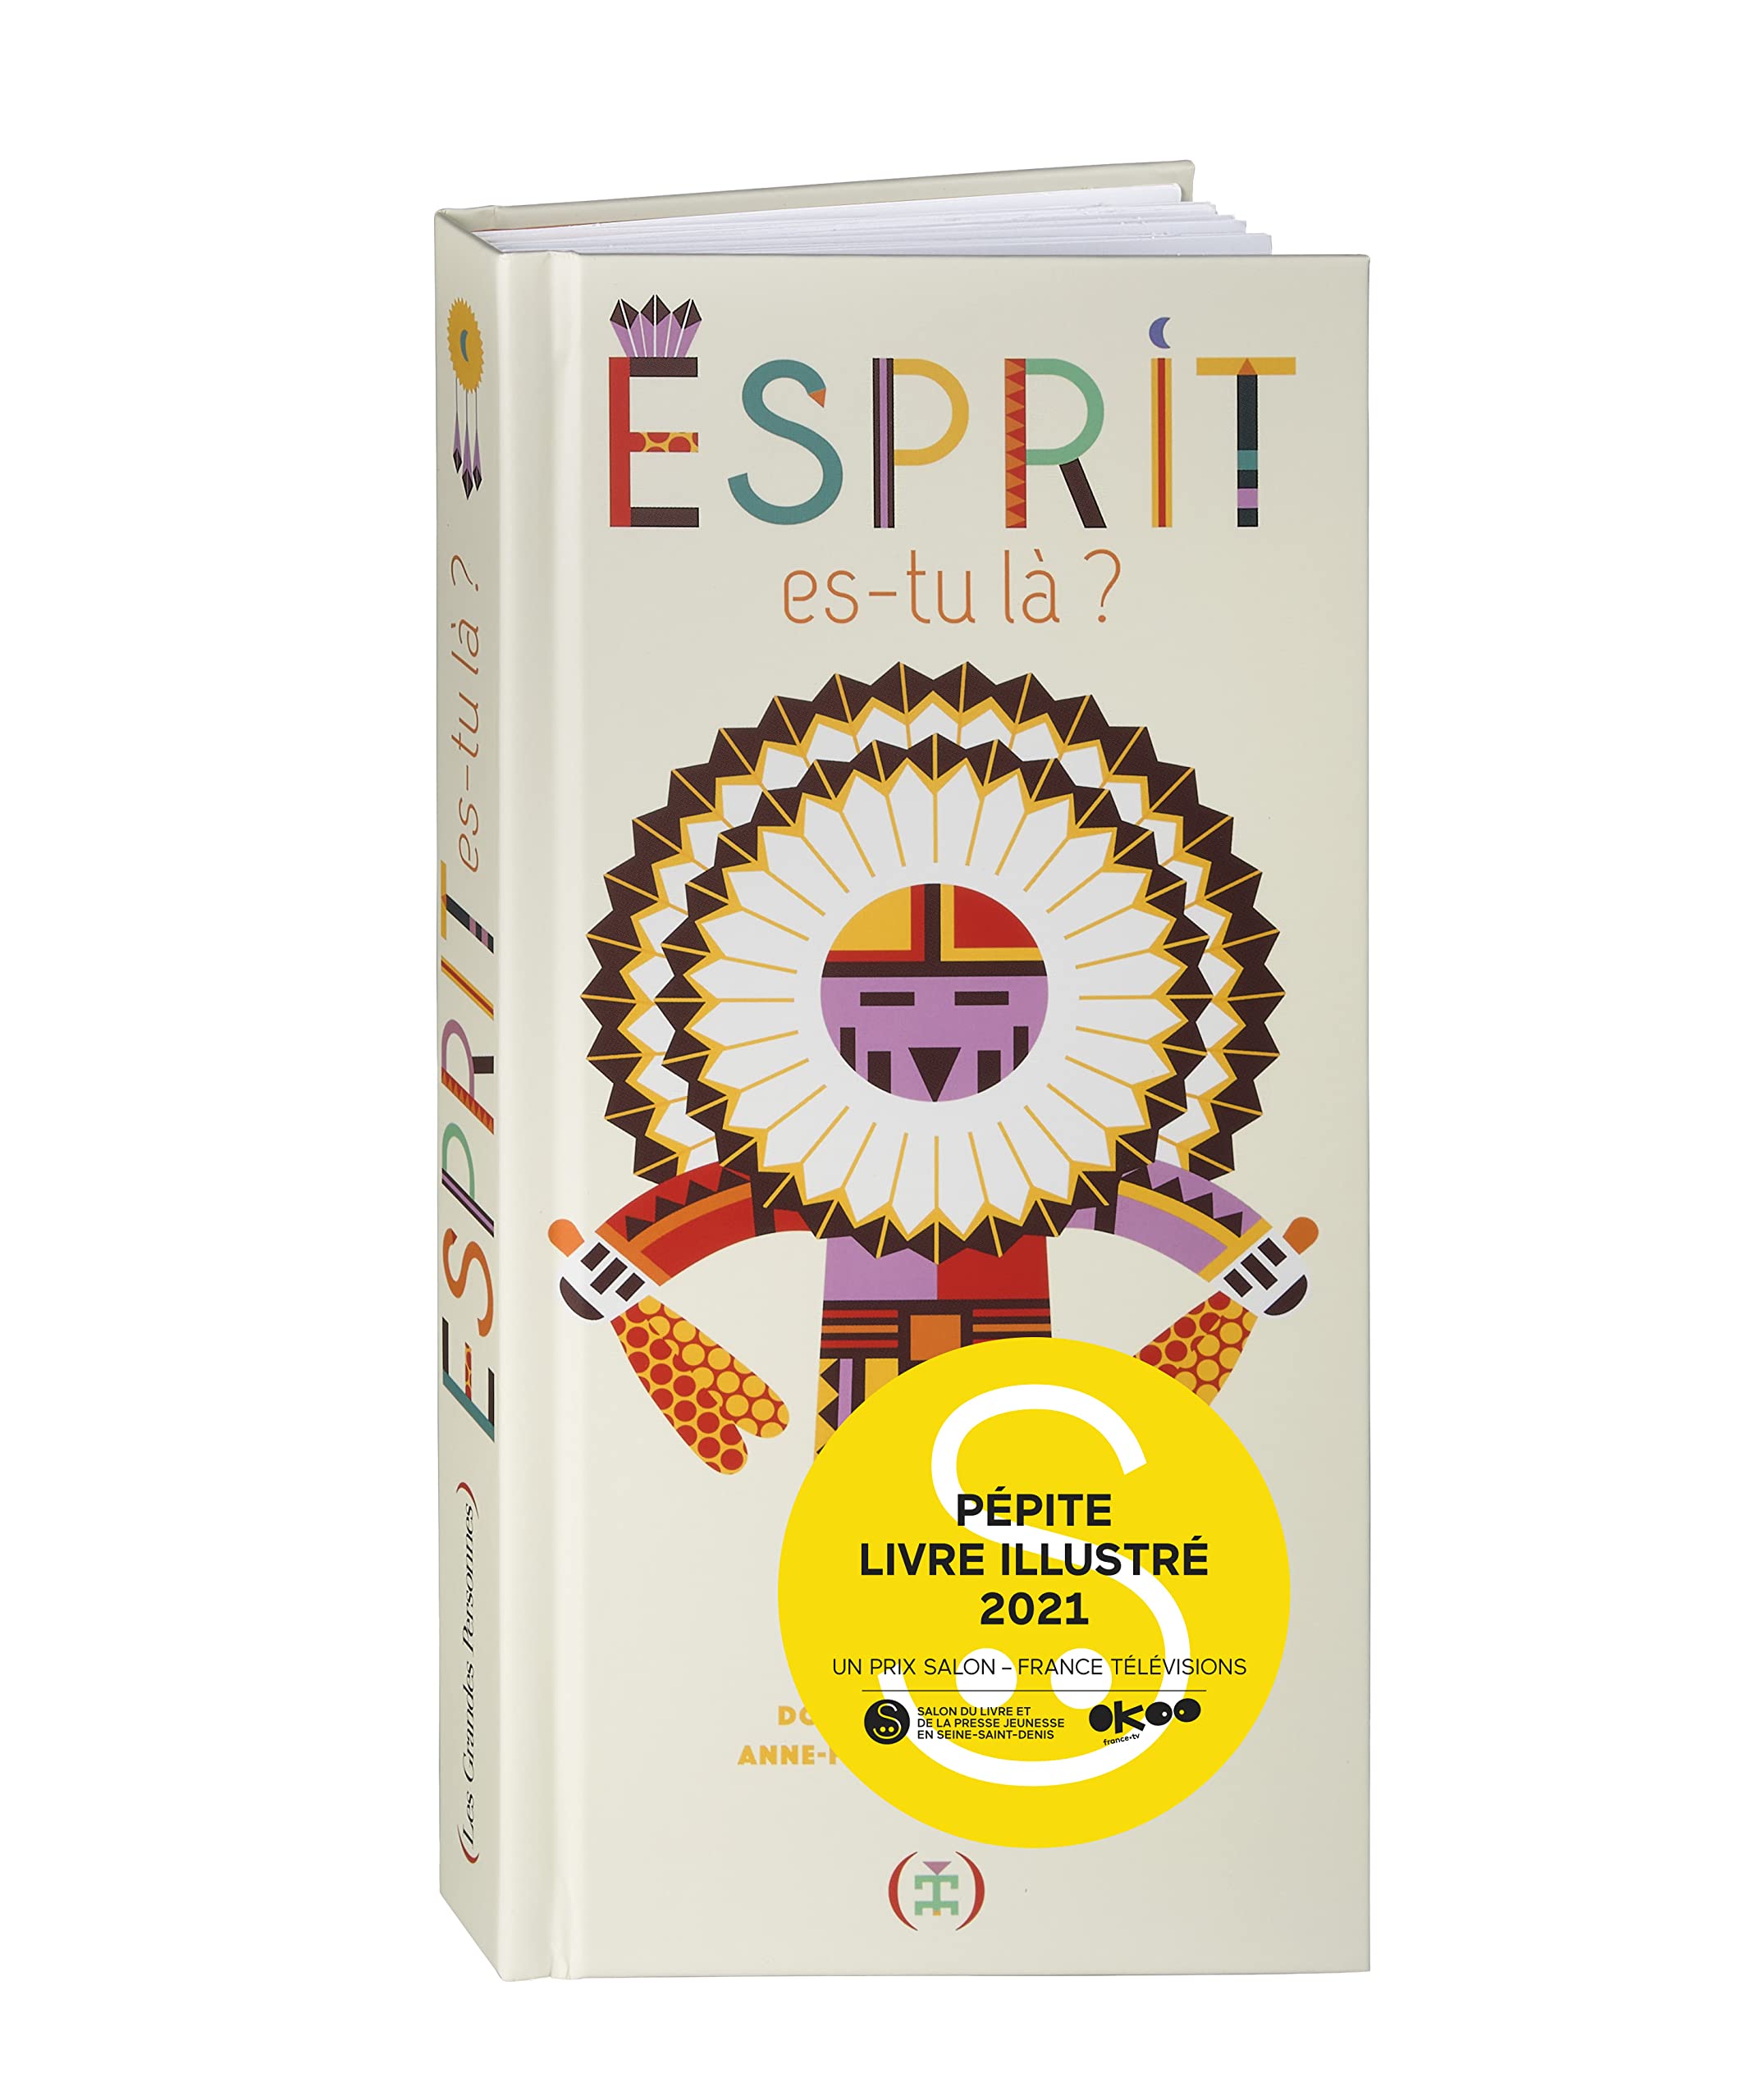 Esprit, es-tu la ?: Livre pop-up (Hardcover, Illustrated)